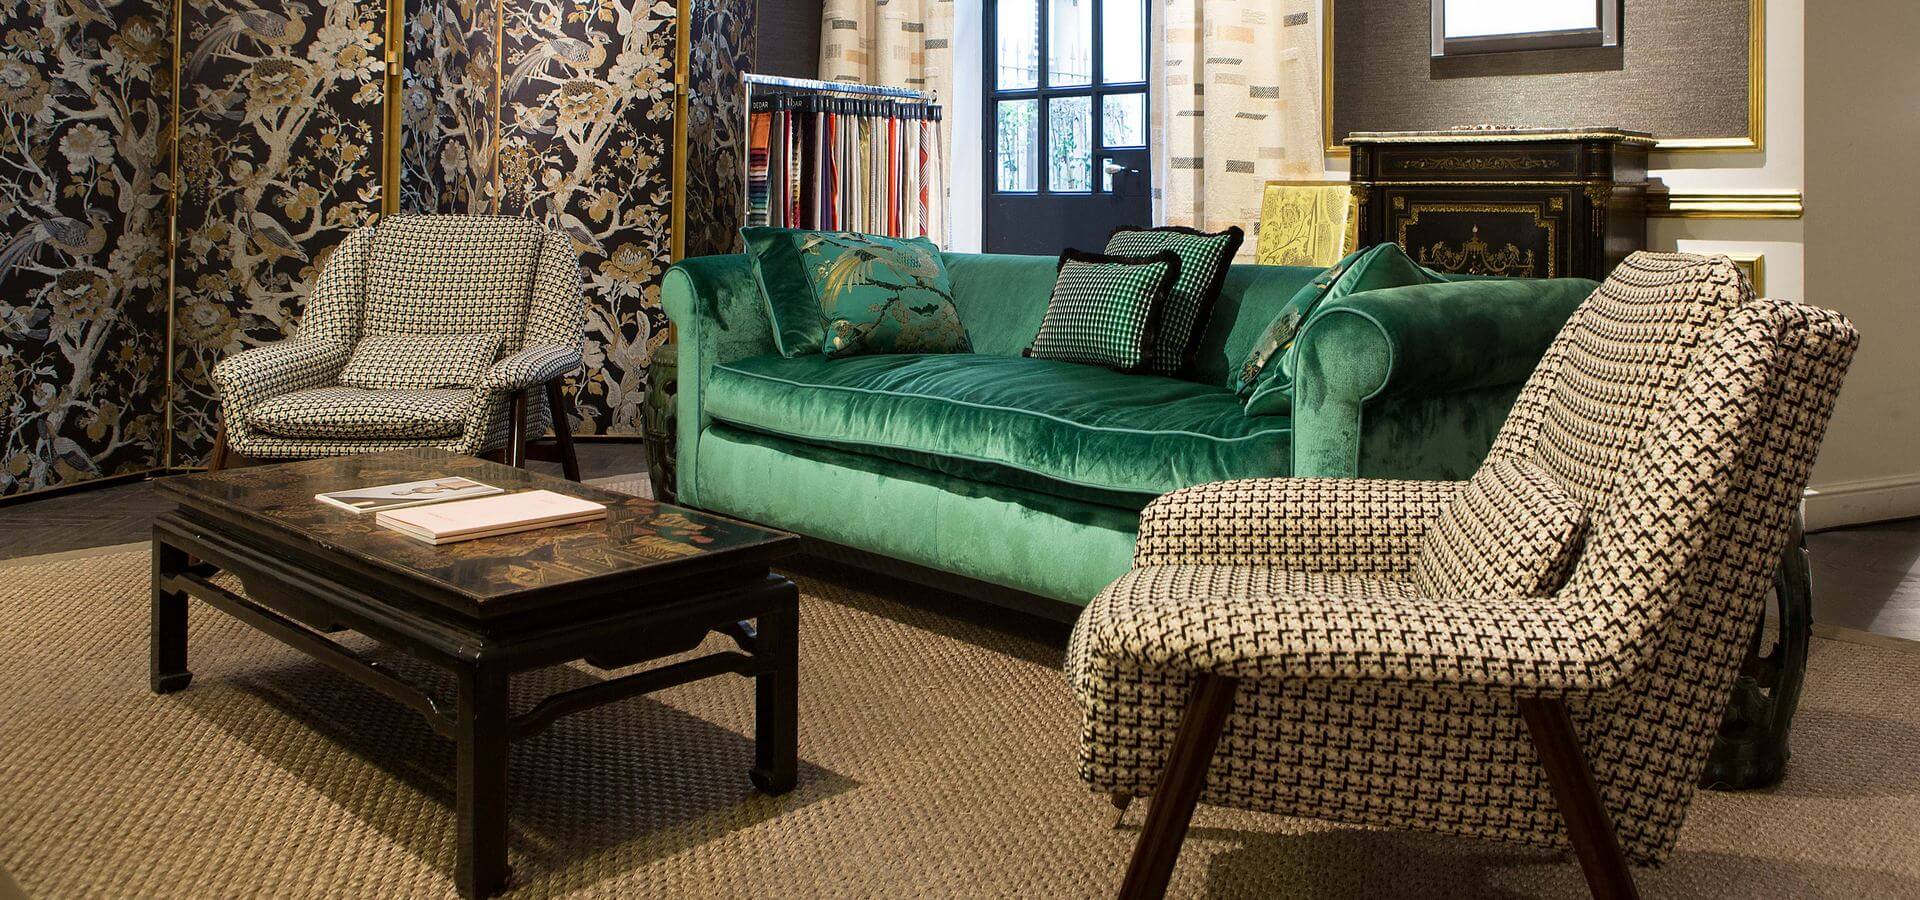 Зеленый бархатный классический диван с креслами в интерьере